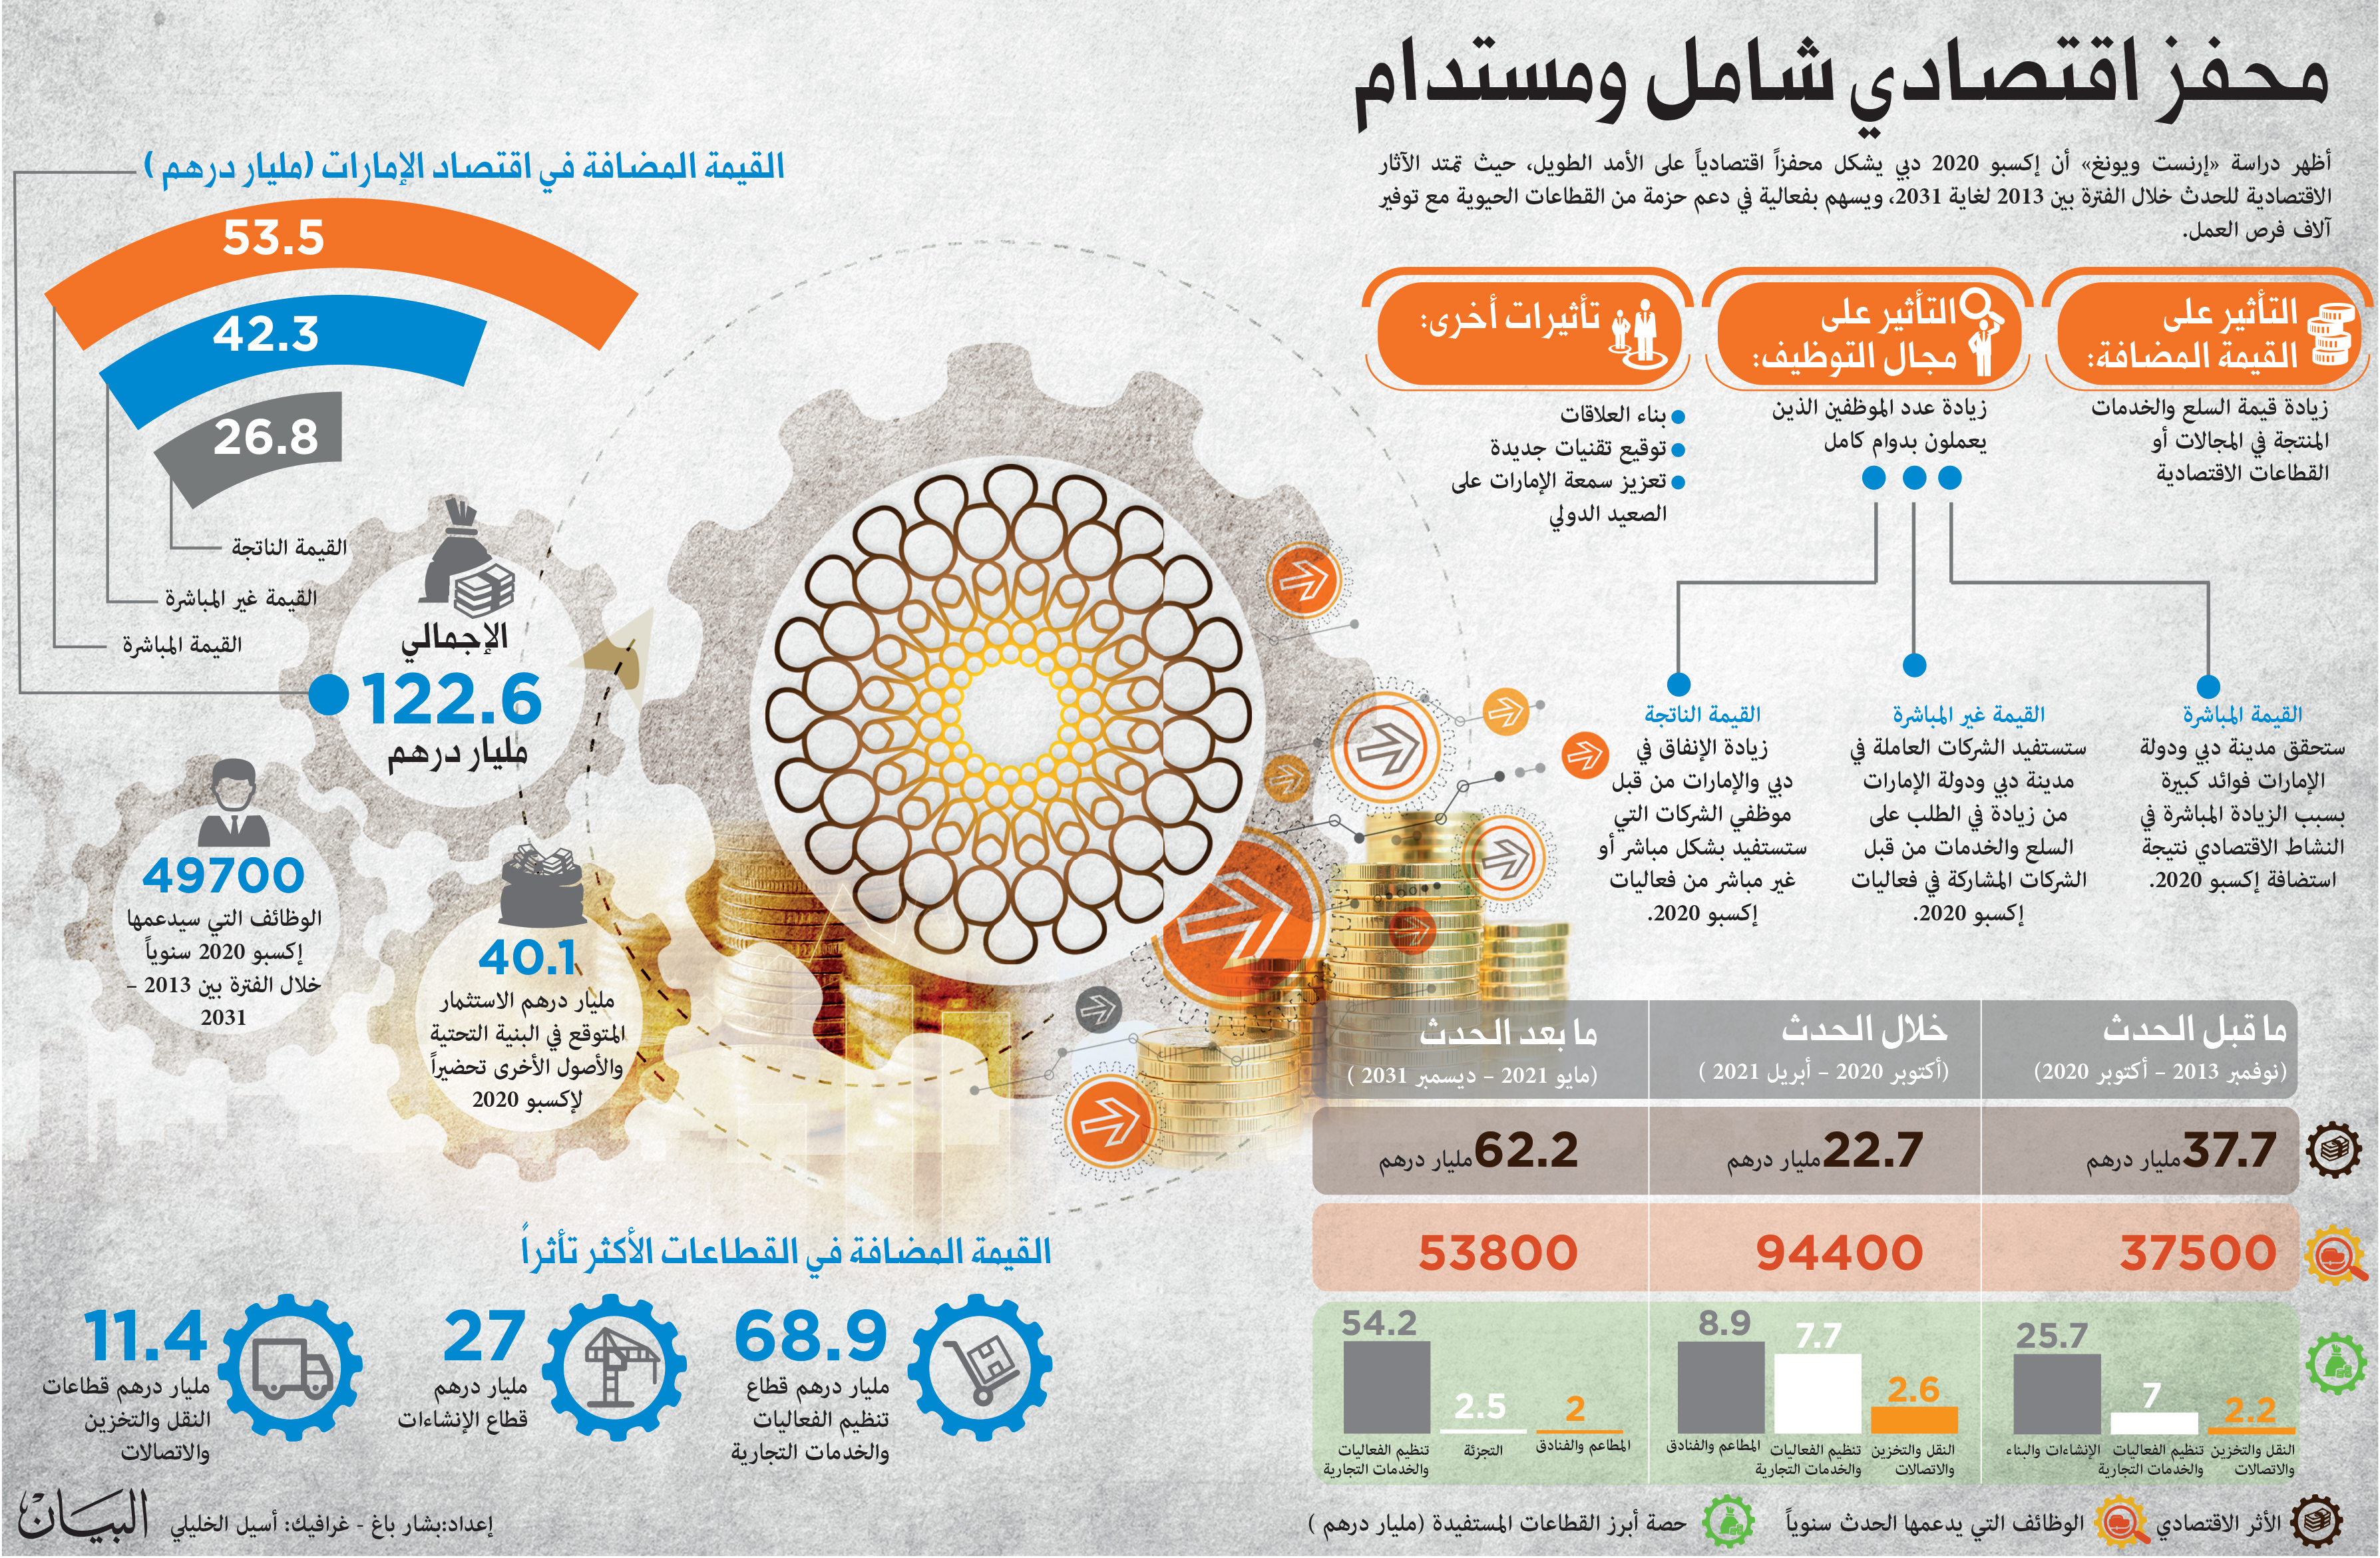 122 6 مليار درهم مساهمة إكسبو 2020 في اقتصاد الإمارات بين 2013 و 2031 ملاحق إكسبو 2020 البيان